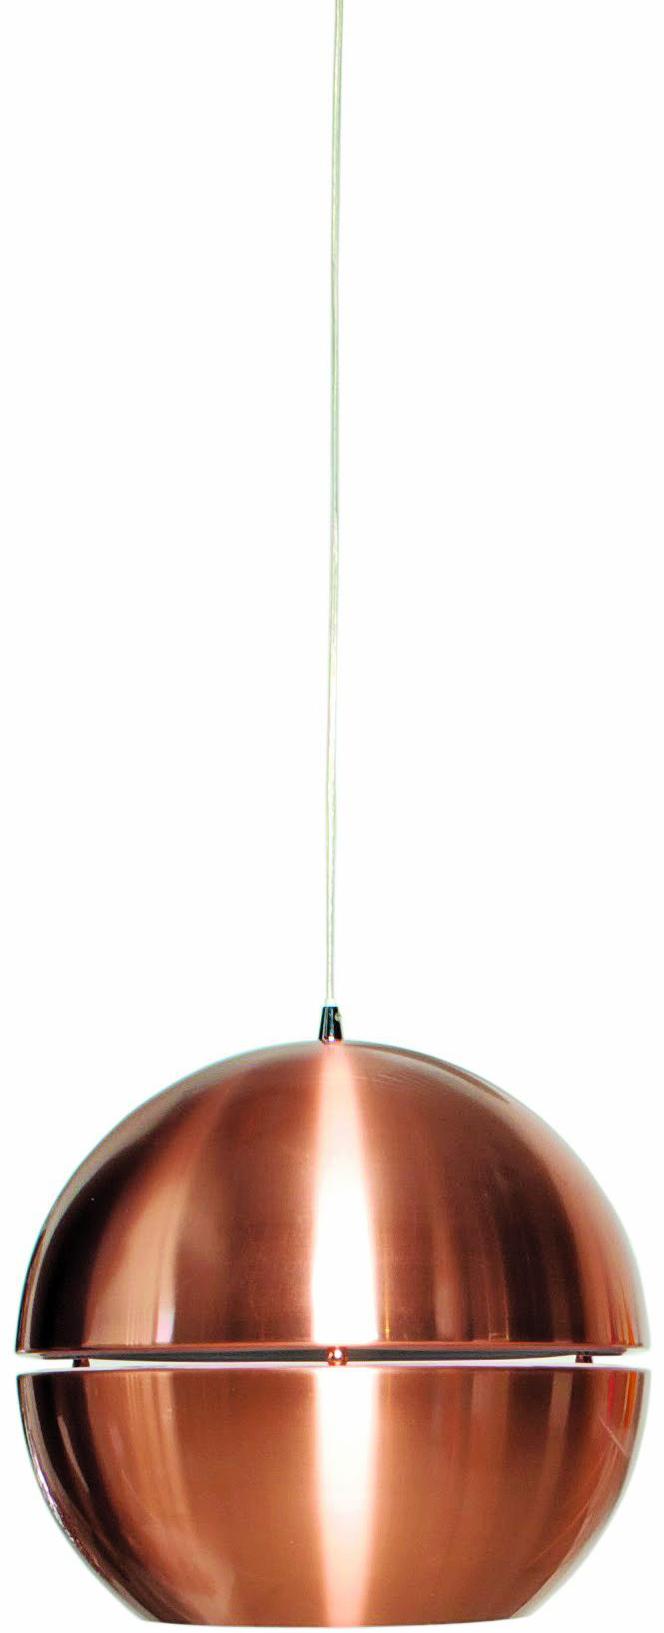 Retro '70 copper r40 cm 899